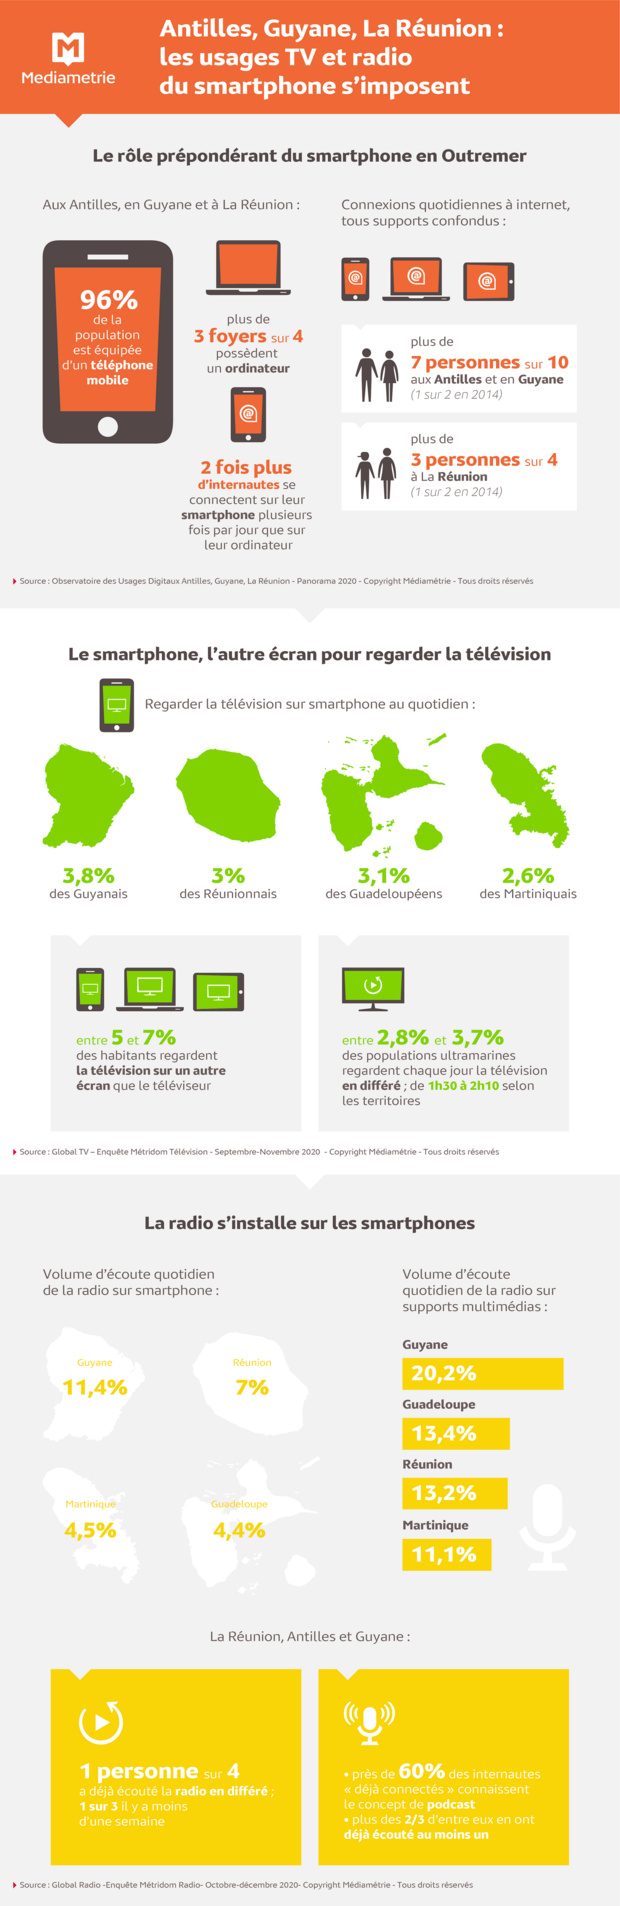 Les utilisations TV et radio du smartphone s’imposent aux Antilles-Guyane et à La Réunion